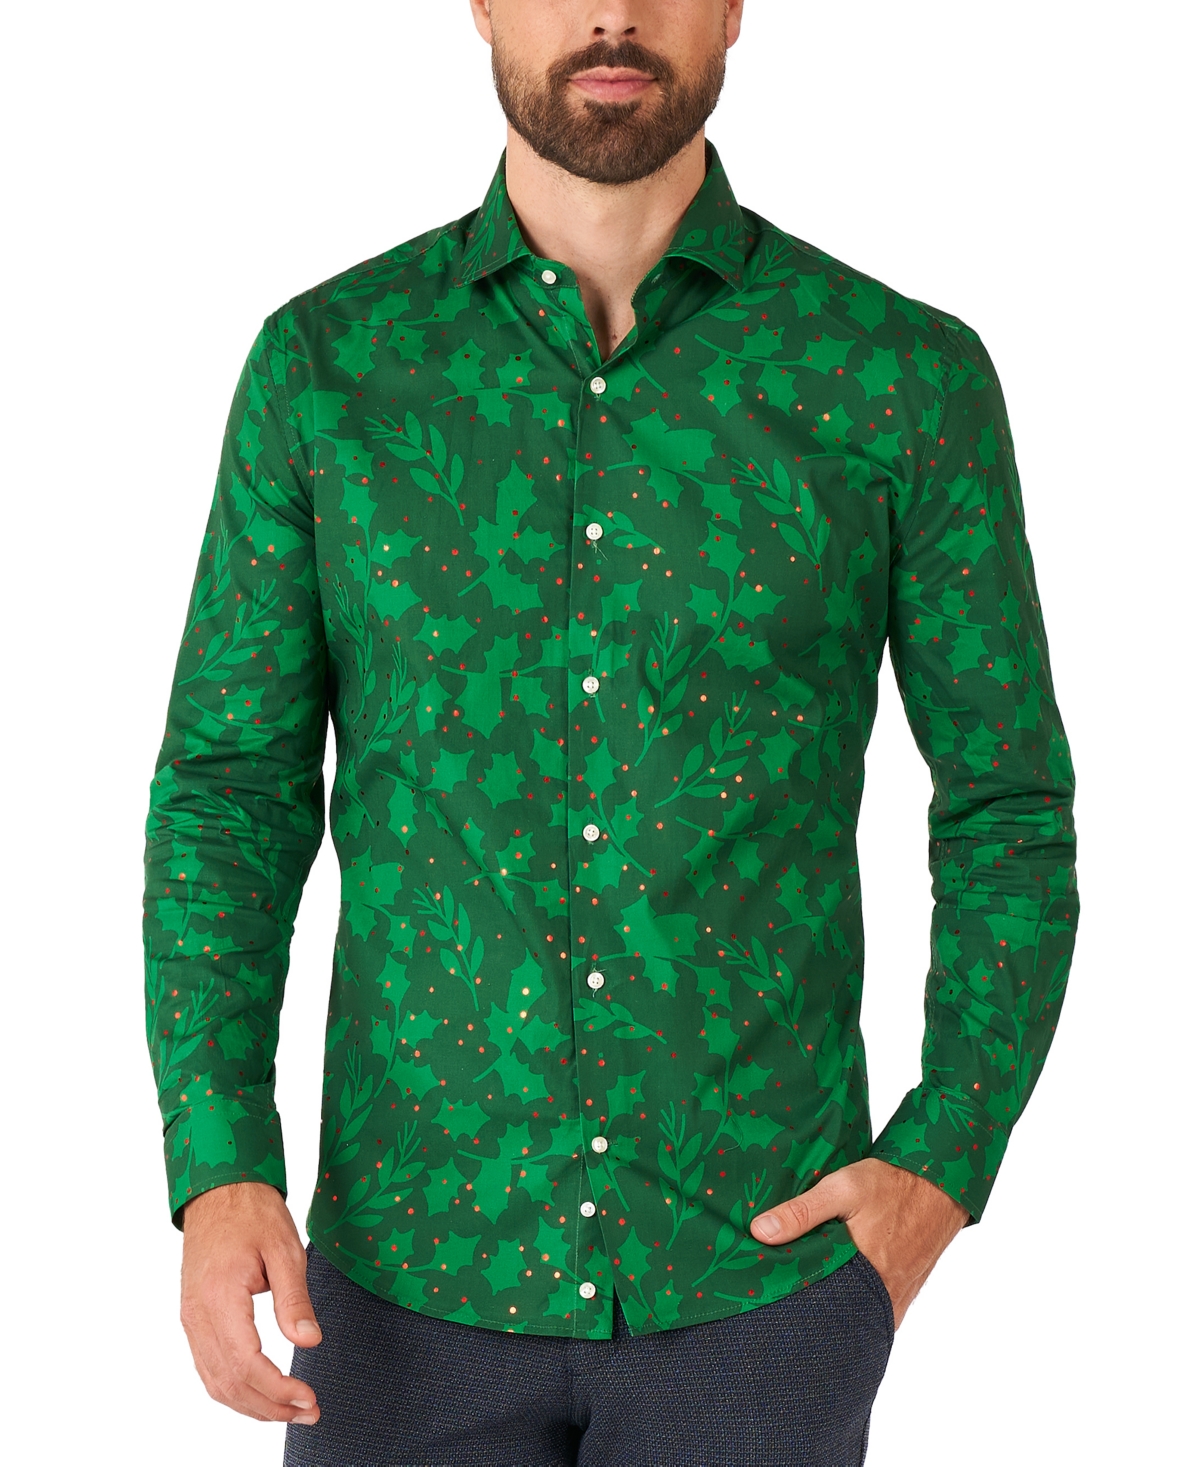 Men's Long-Sleeve Green Berry Shirt - Green